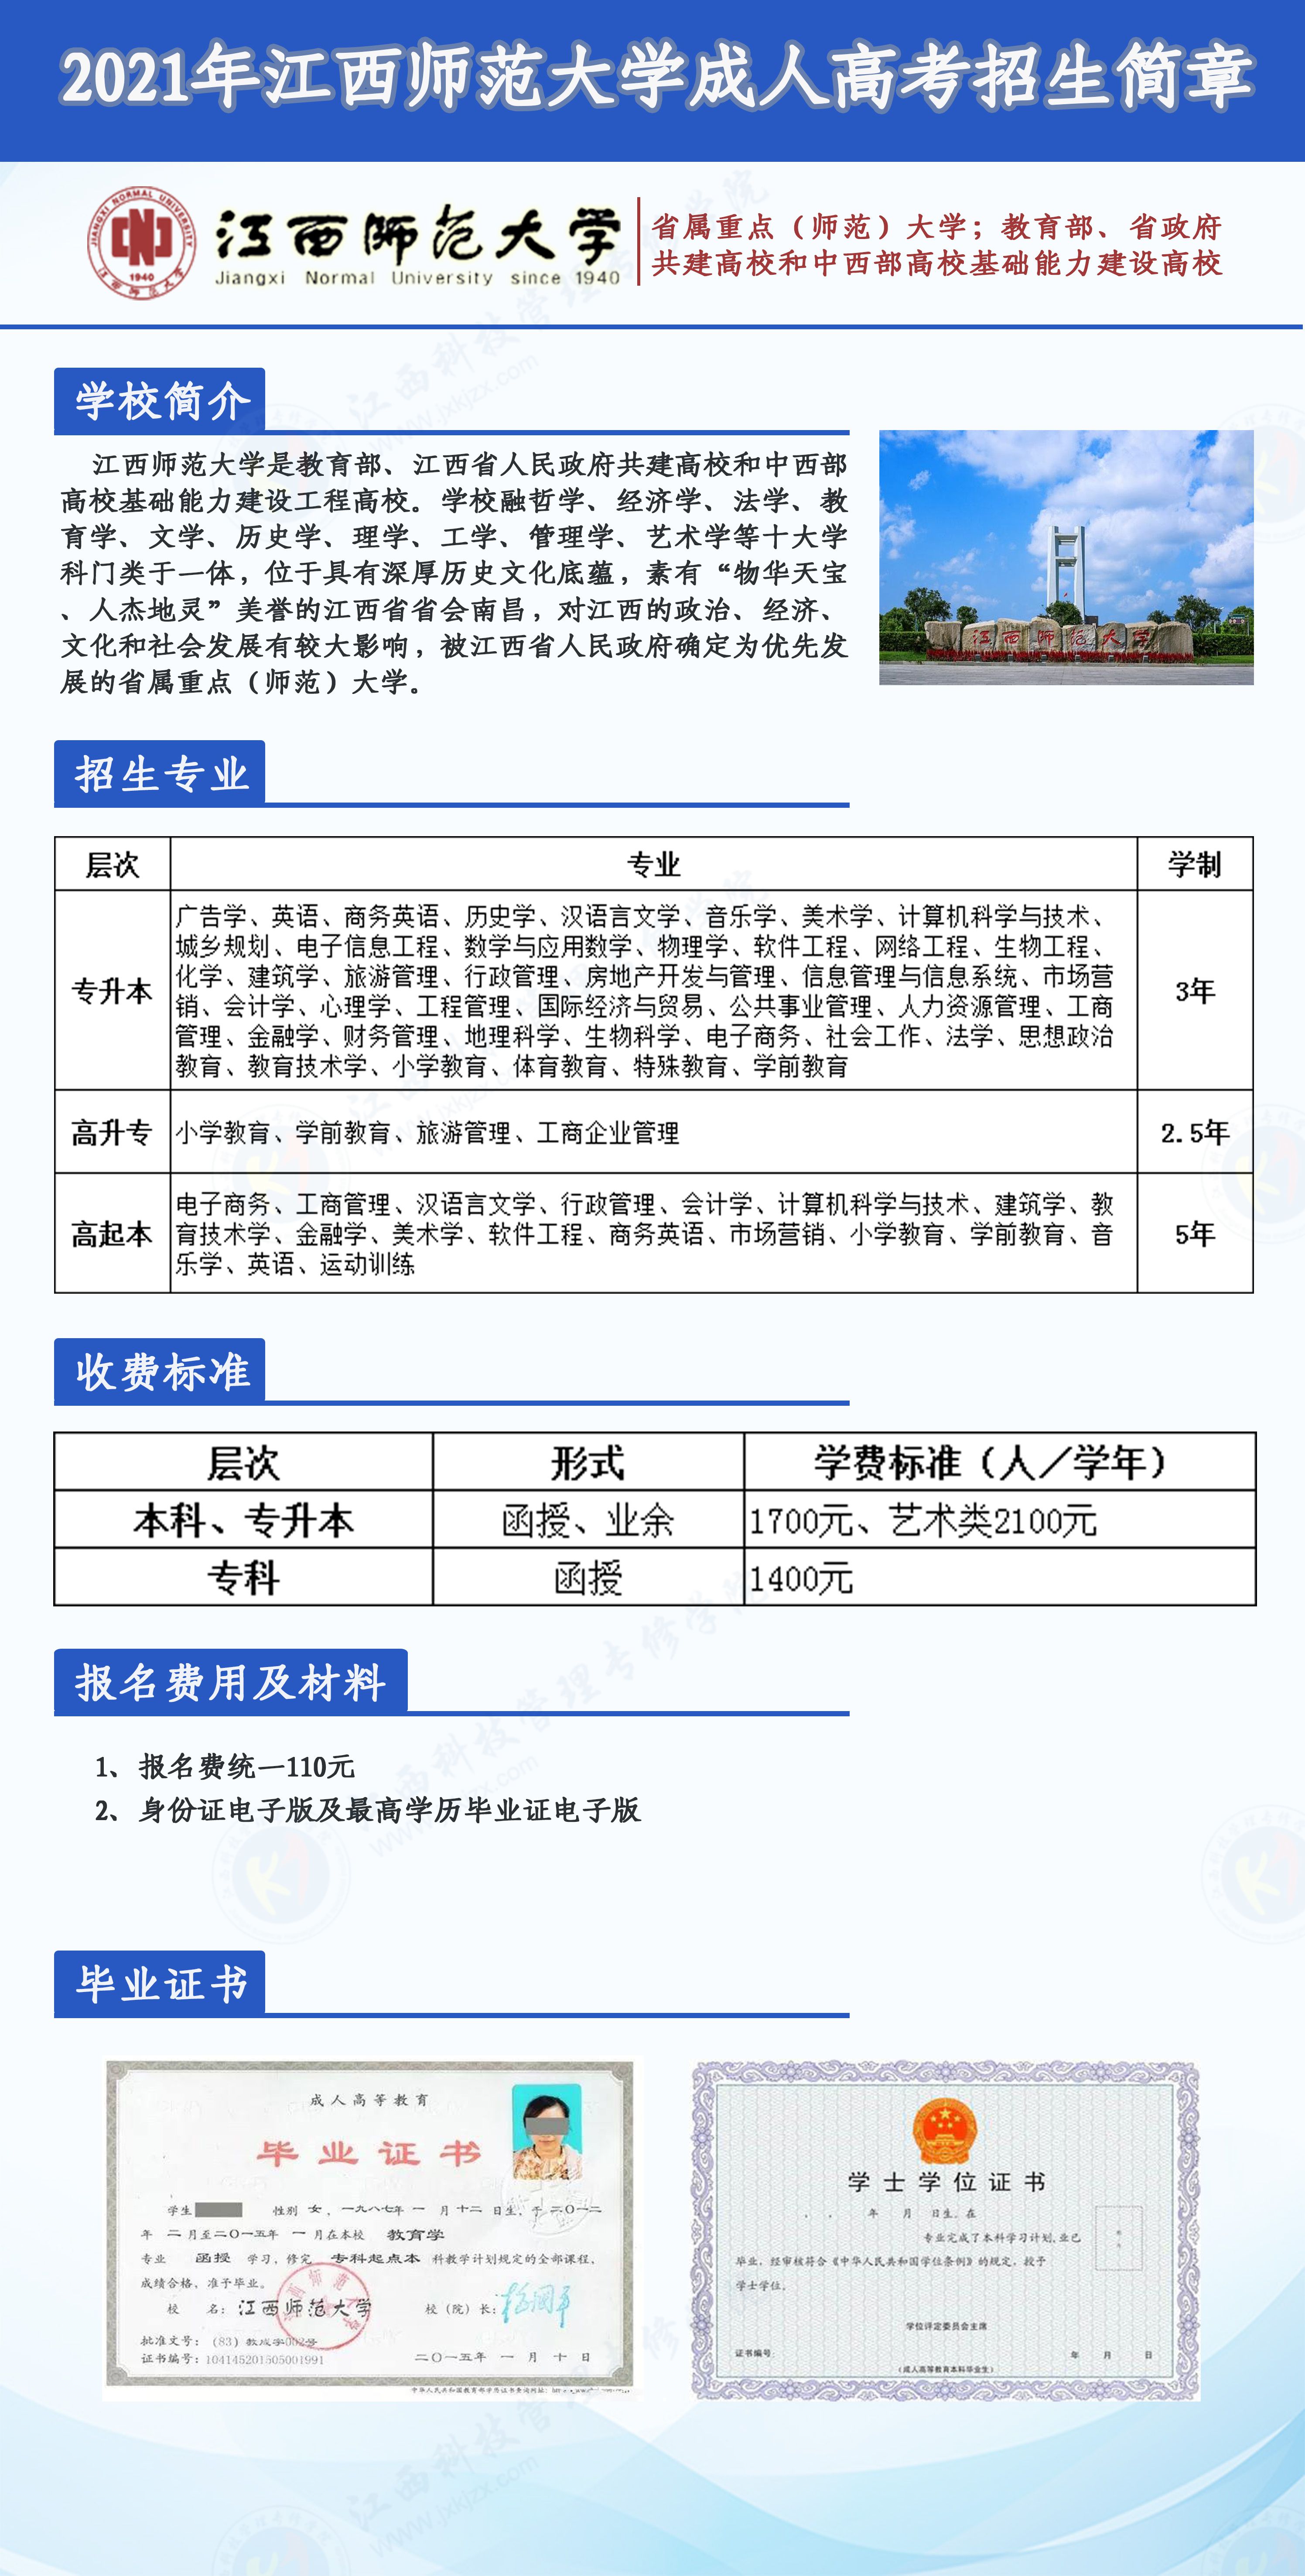 江西师范大学2021年成人高考招生简章